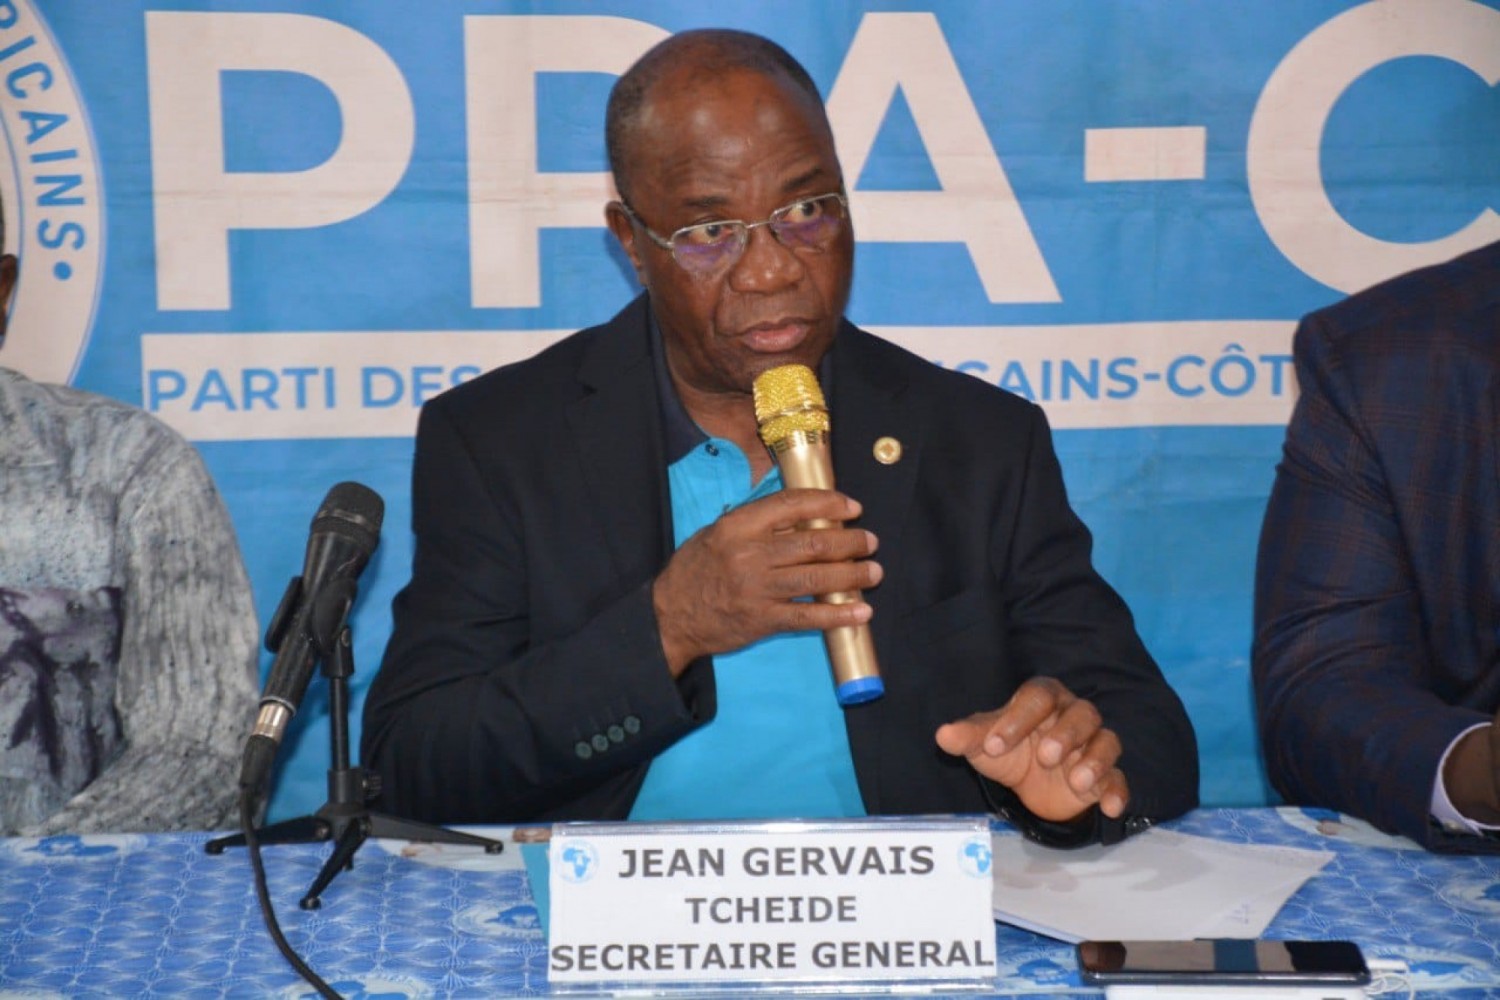 Côte d'Ivoire : Pour ses activités, le PPA-CI lance un concours des paroles de son hymne